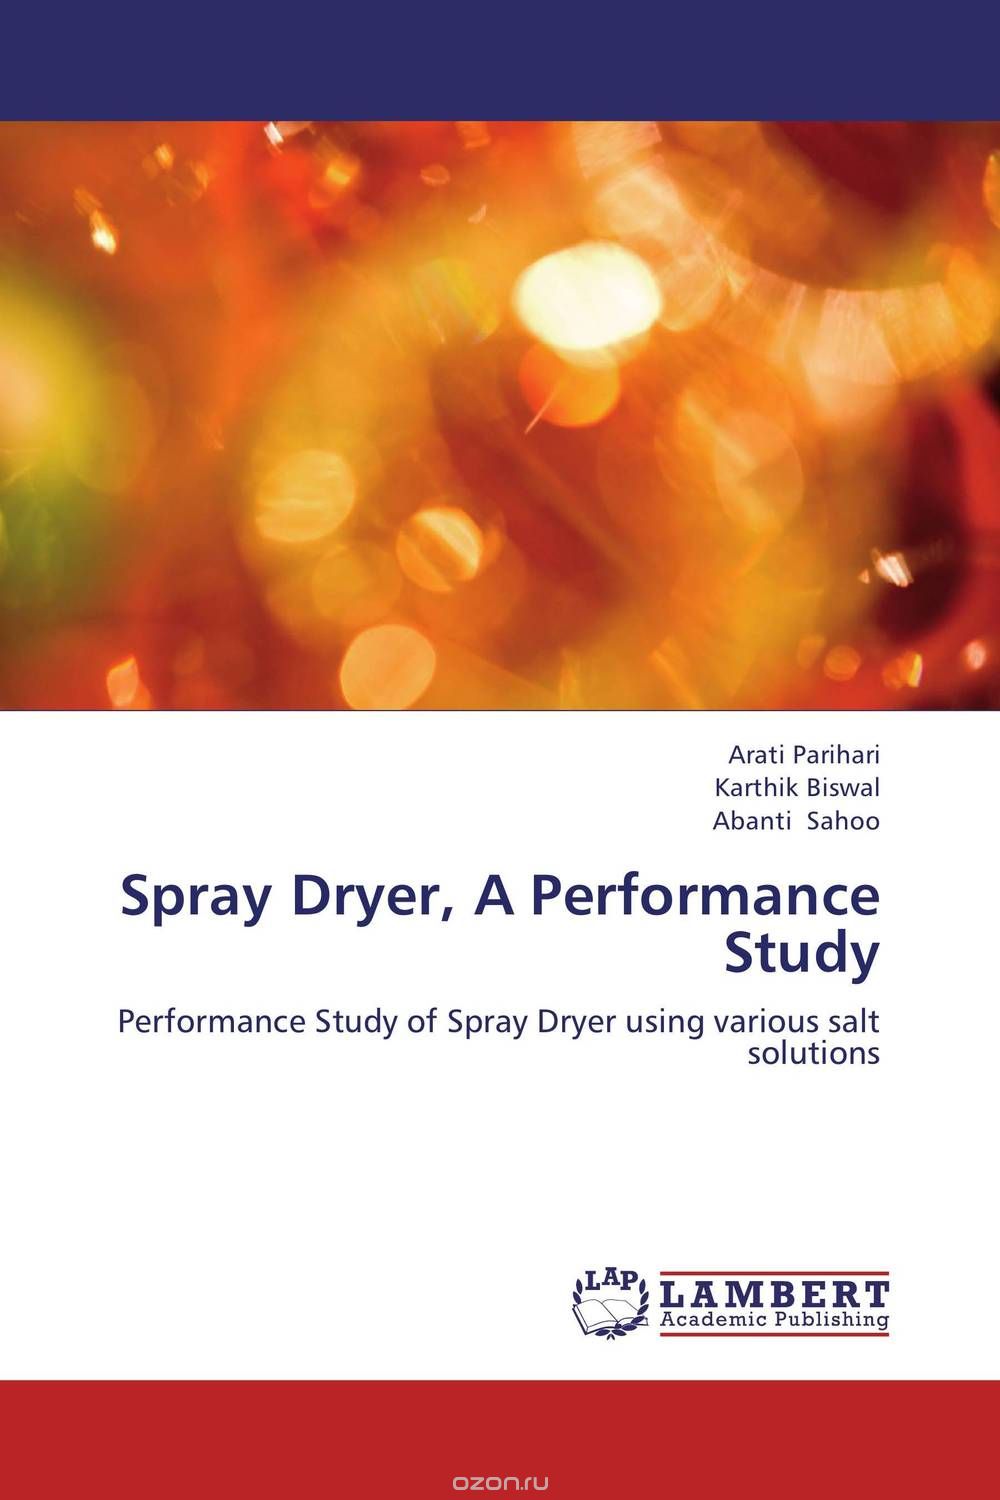 Скачать книгу "Spray Dryer, A Performance Study"